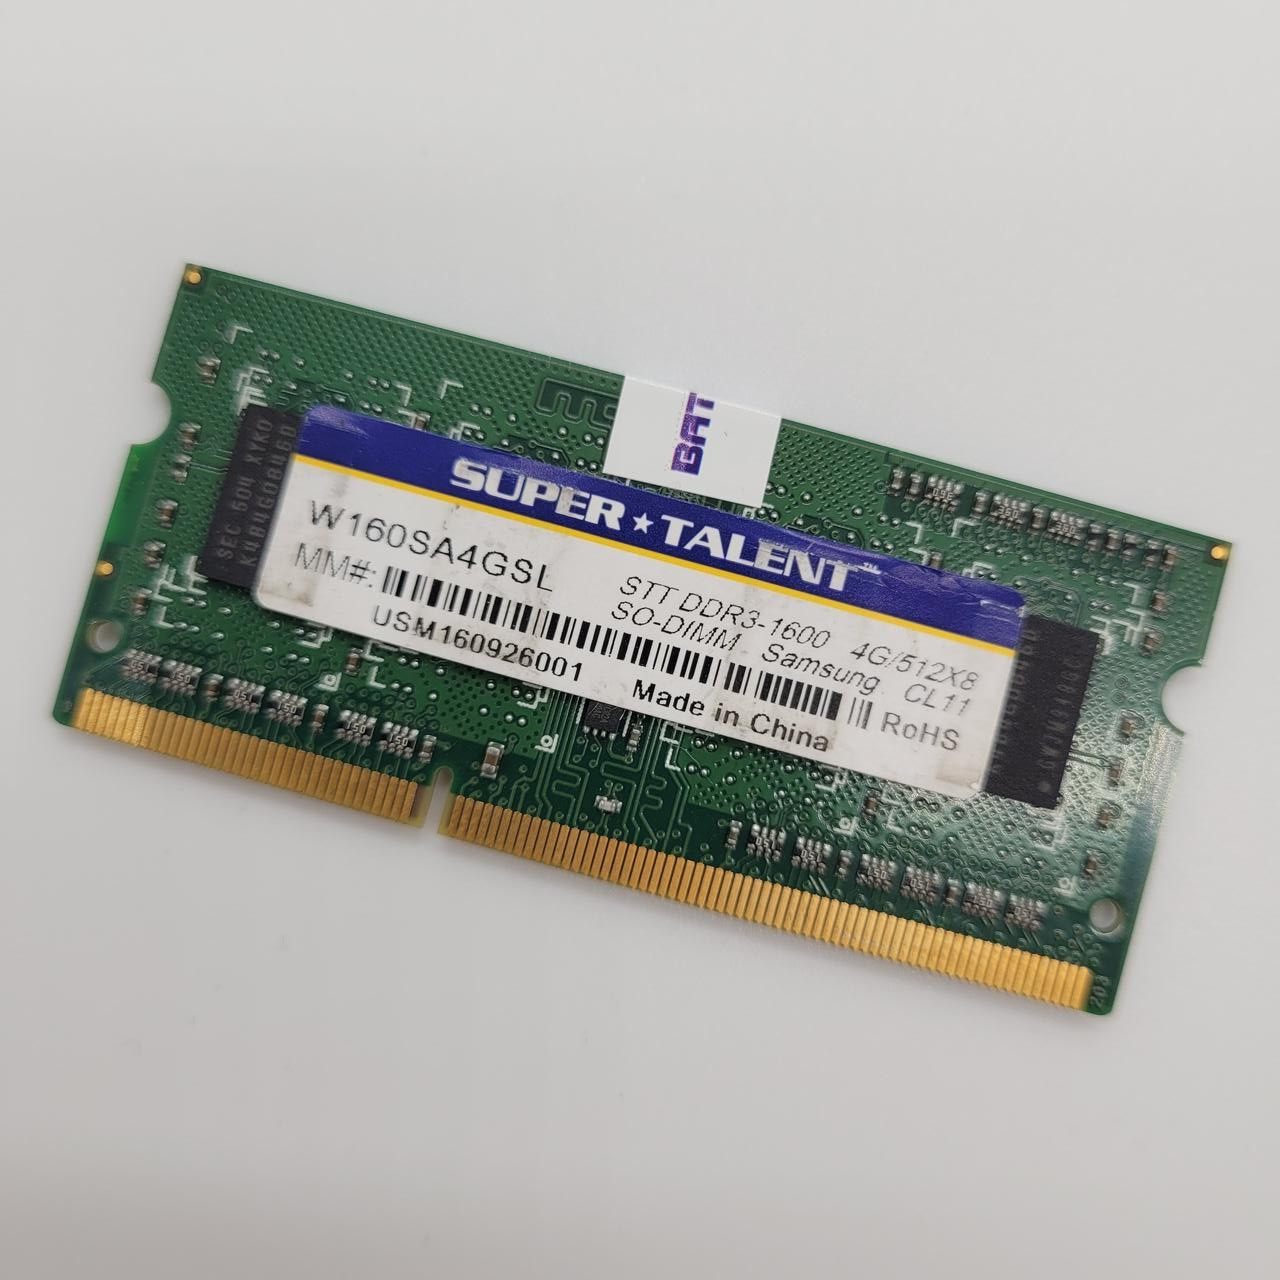 Оперативна пам'ять для ноутбука Super Talent SODIMM DDR3L 4Gb 1600MHz 12800S 1R8 CL11 (W160SA4GSL) Б/У